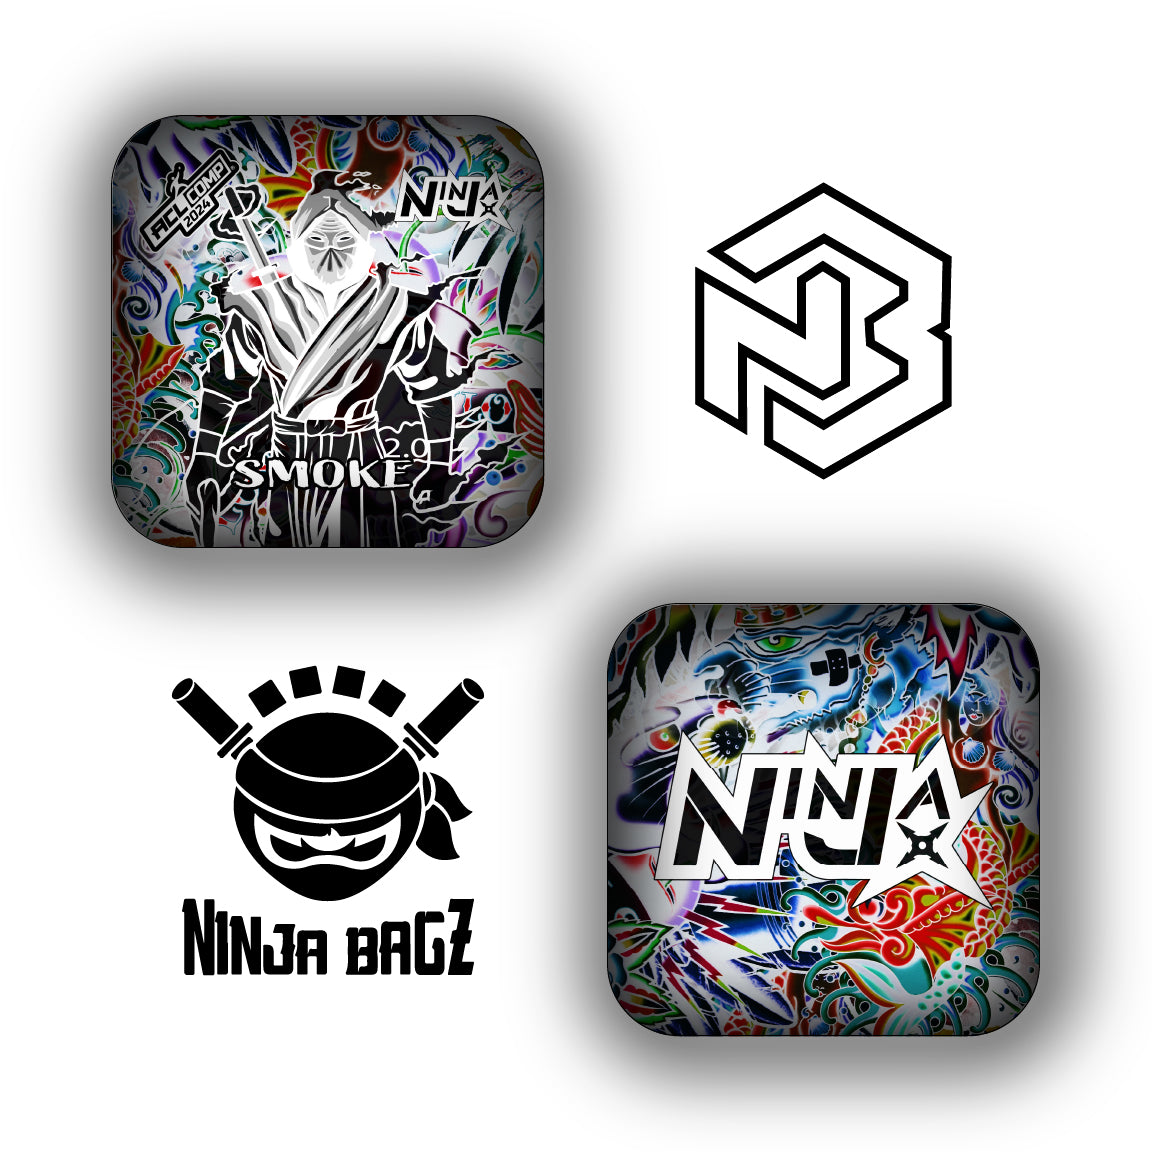 New Ninja Smoke 2.0 – NinjaBagz